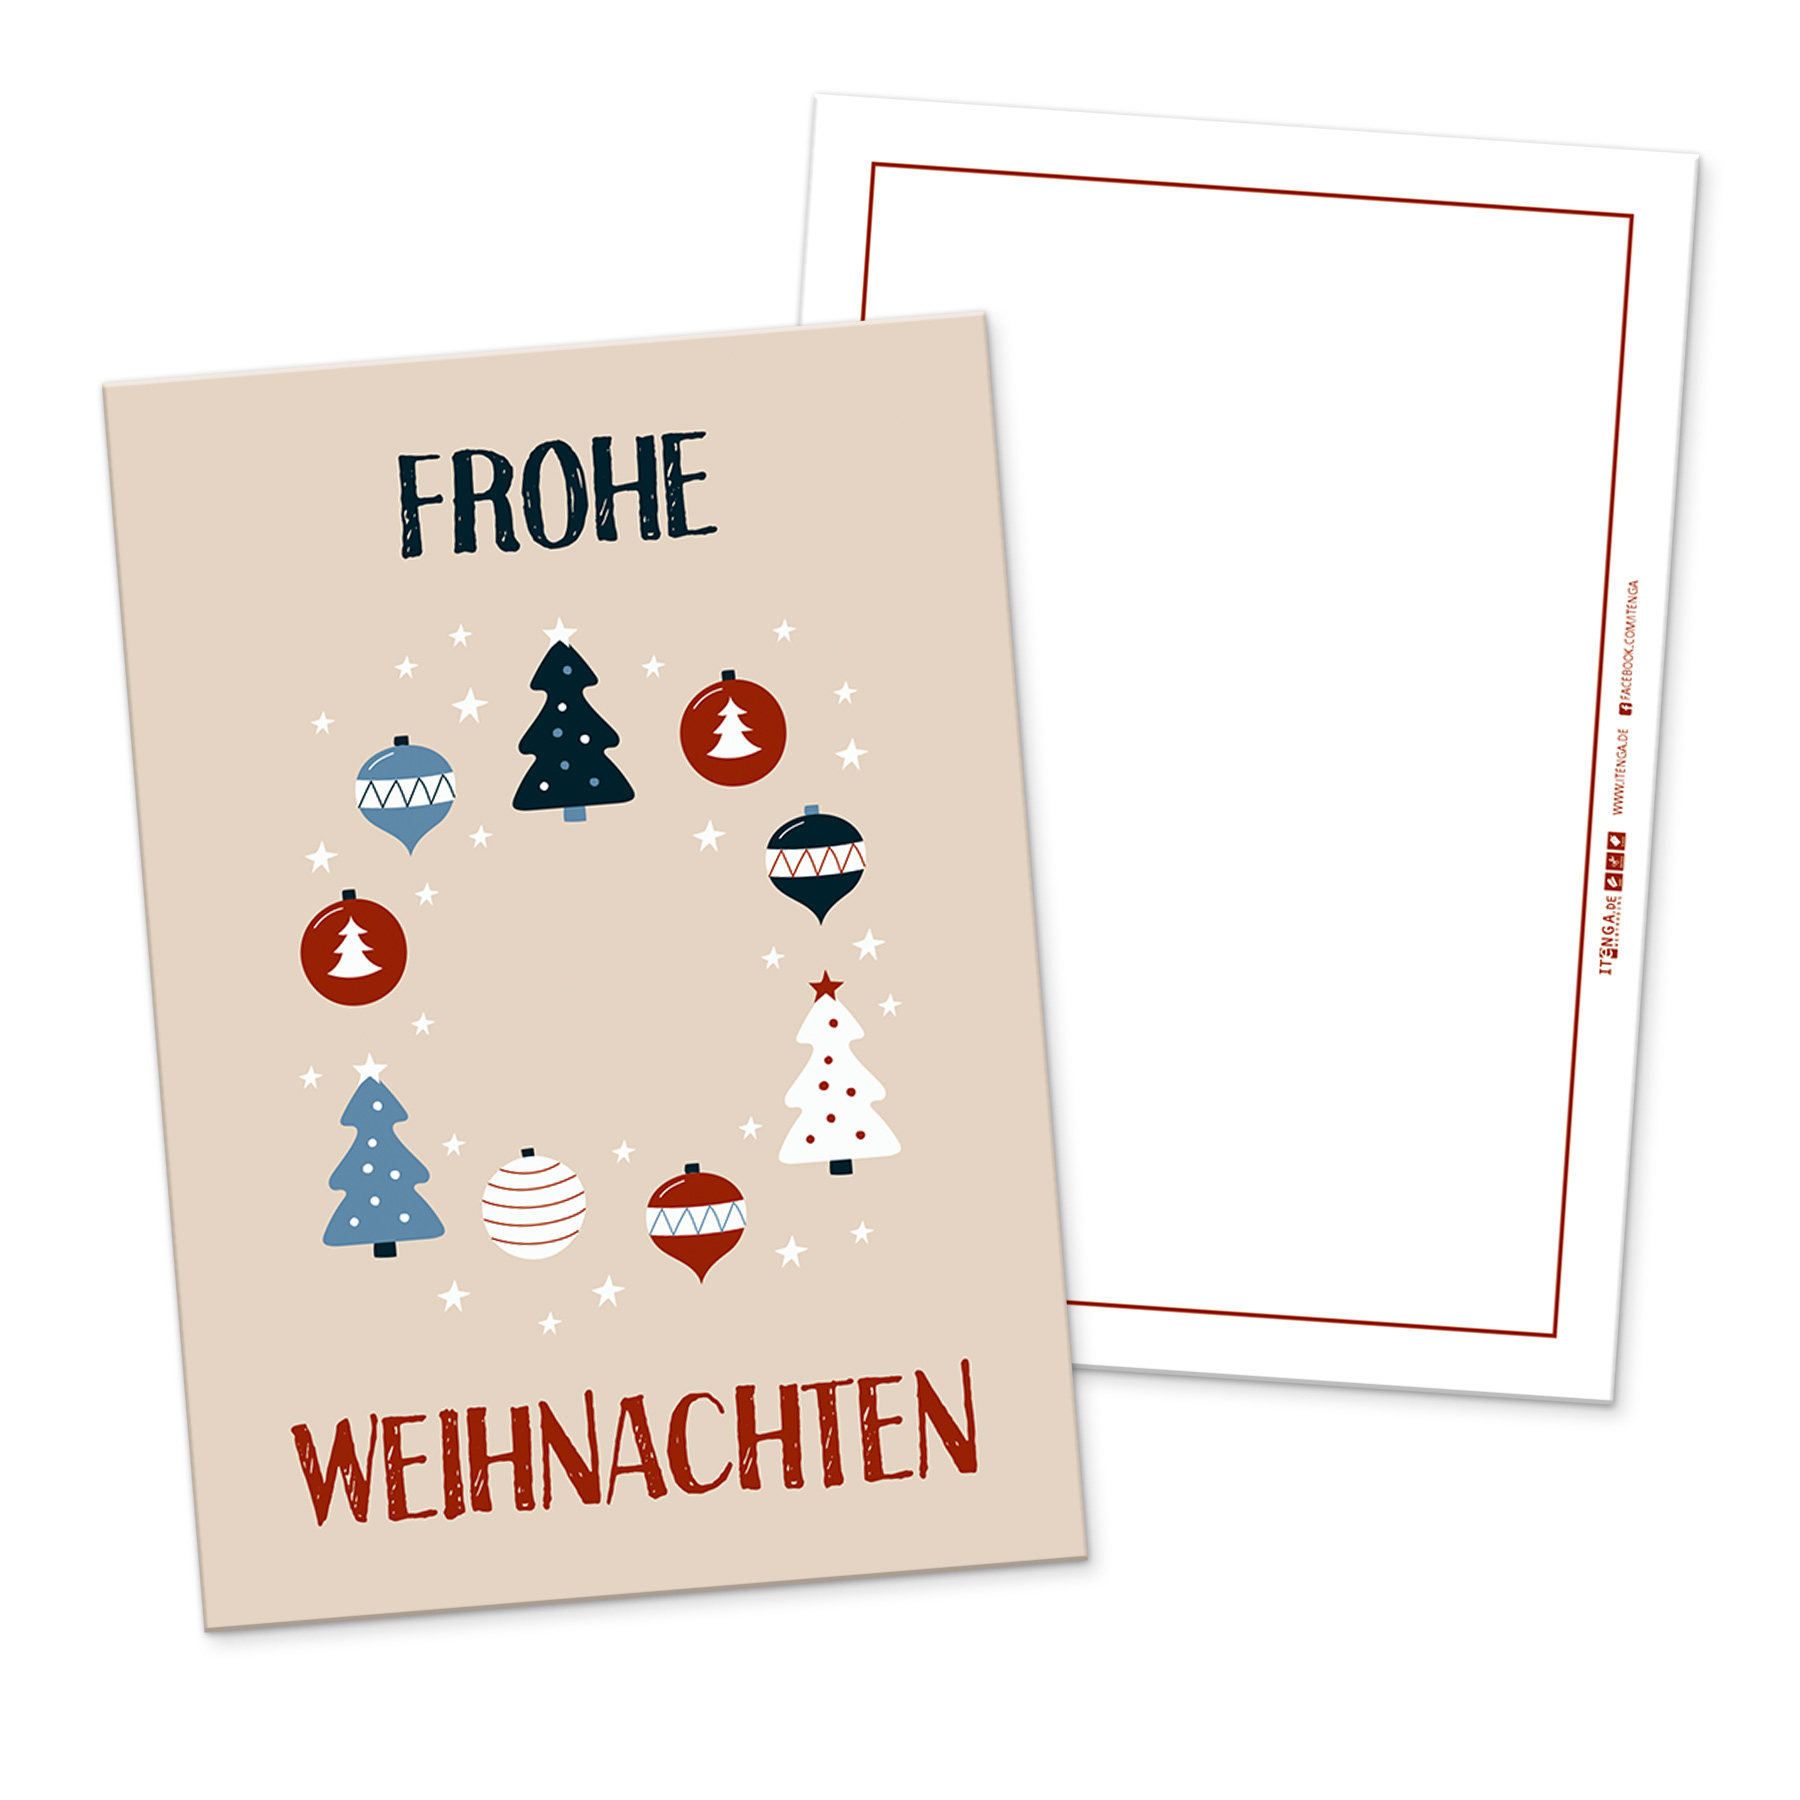 itenga 12 x Postkarte Grukarte Frohe Weihnachten Weihna...